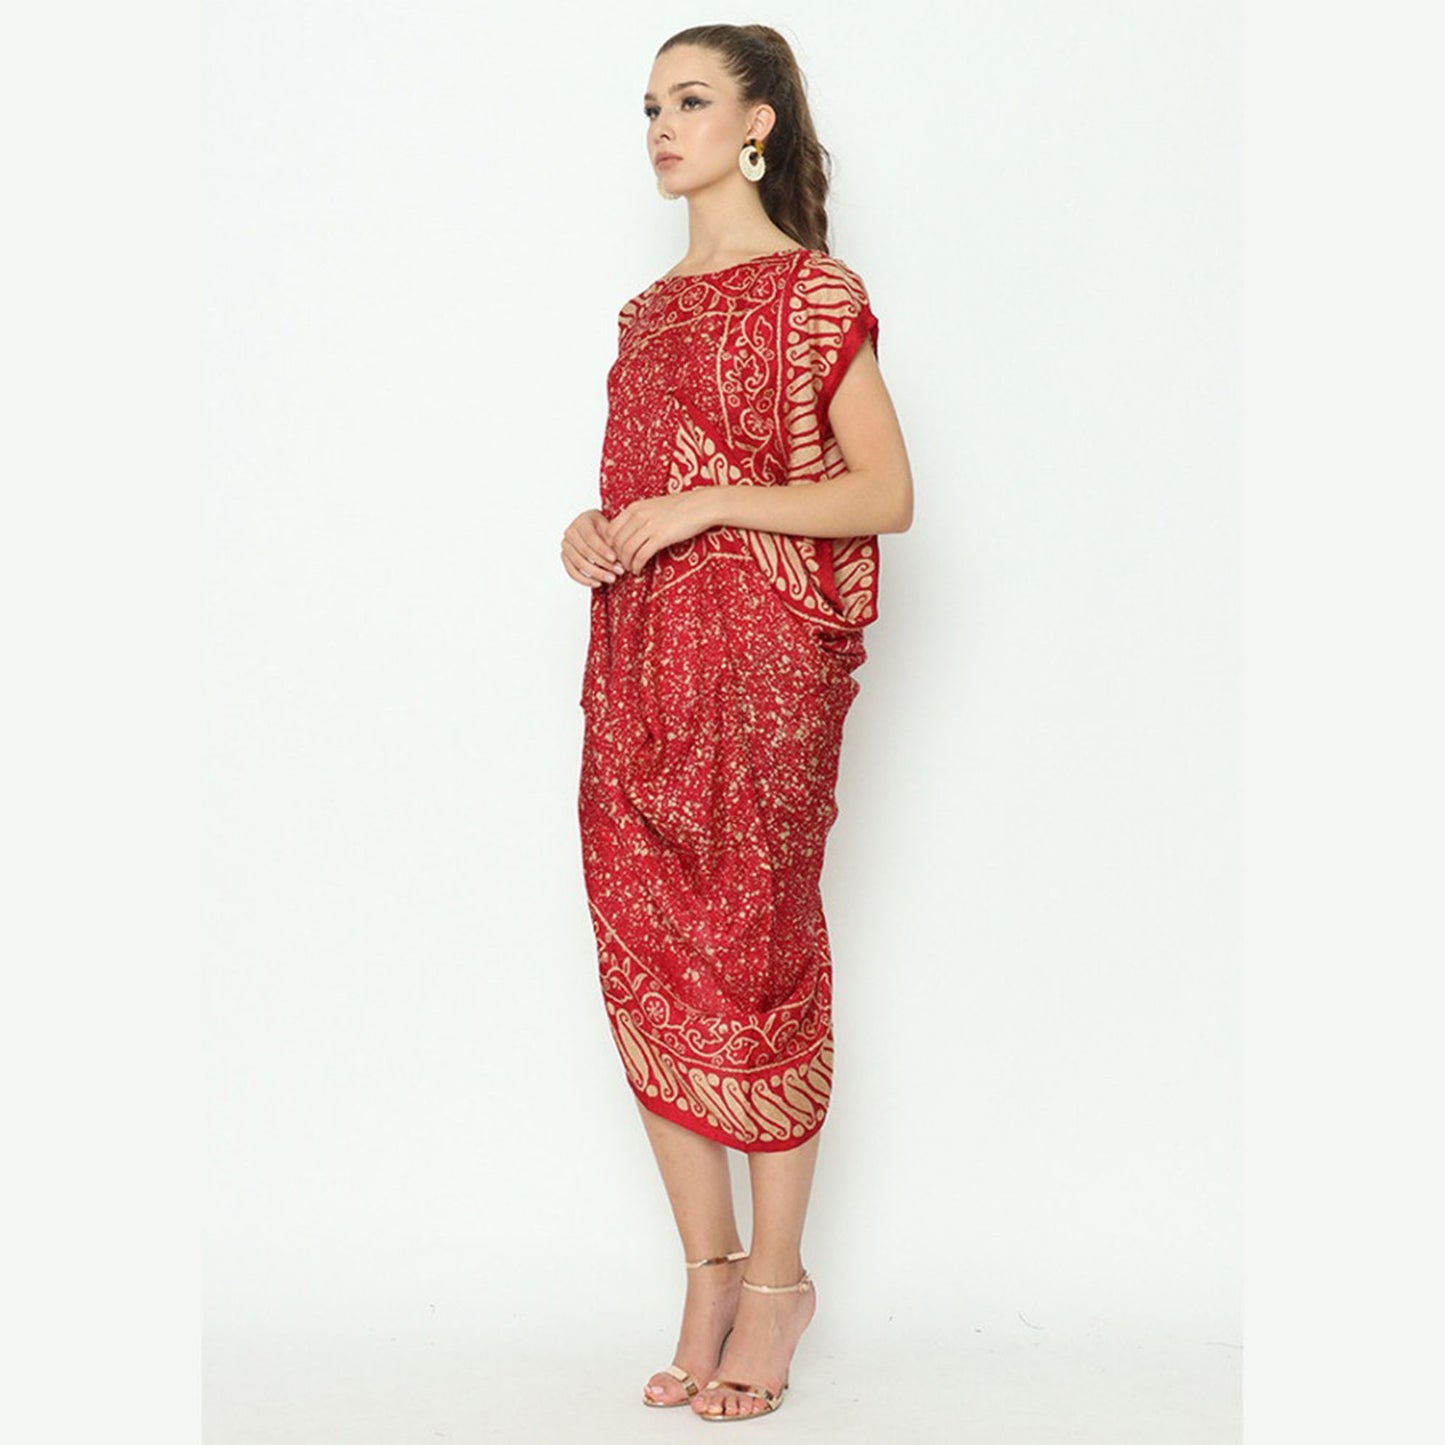 Rinjanie Avon Red Batik Imlek Dress Bombay Chantel Parang Mix